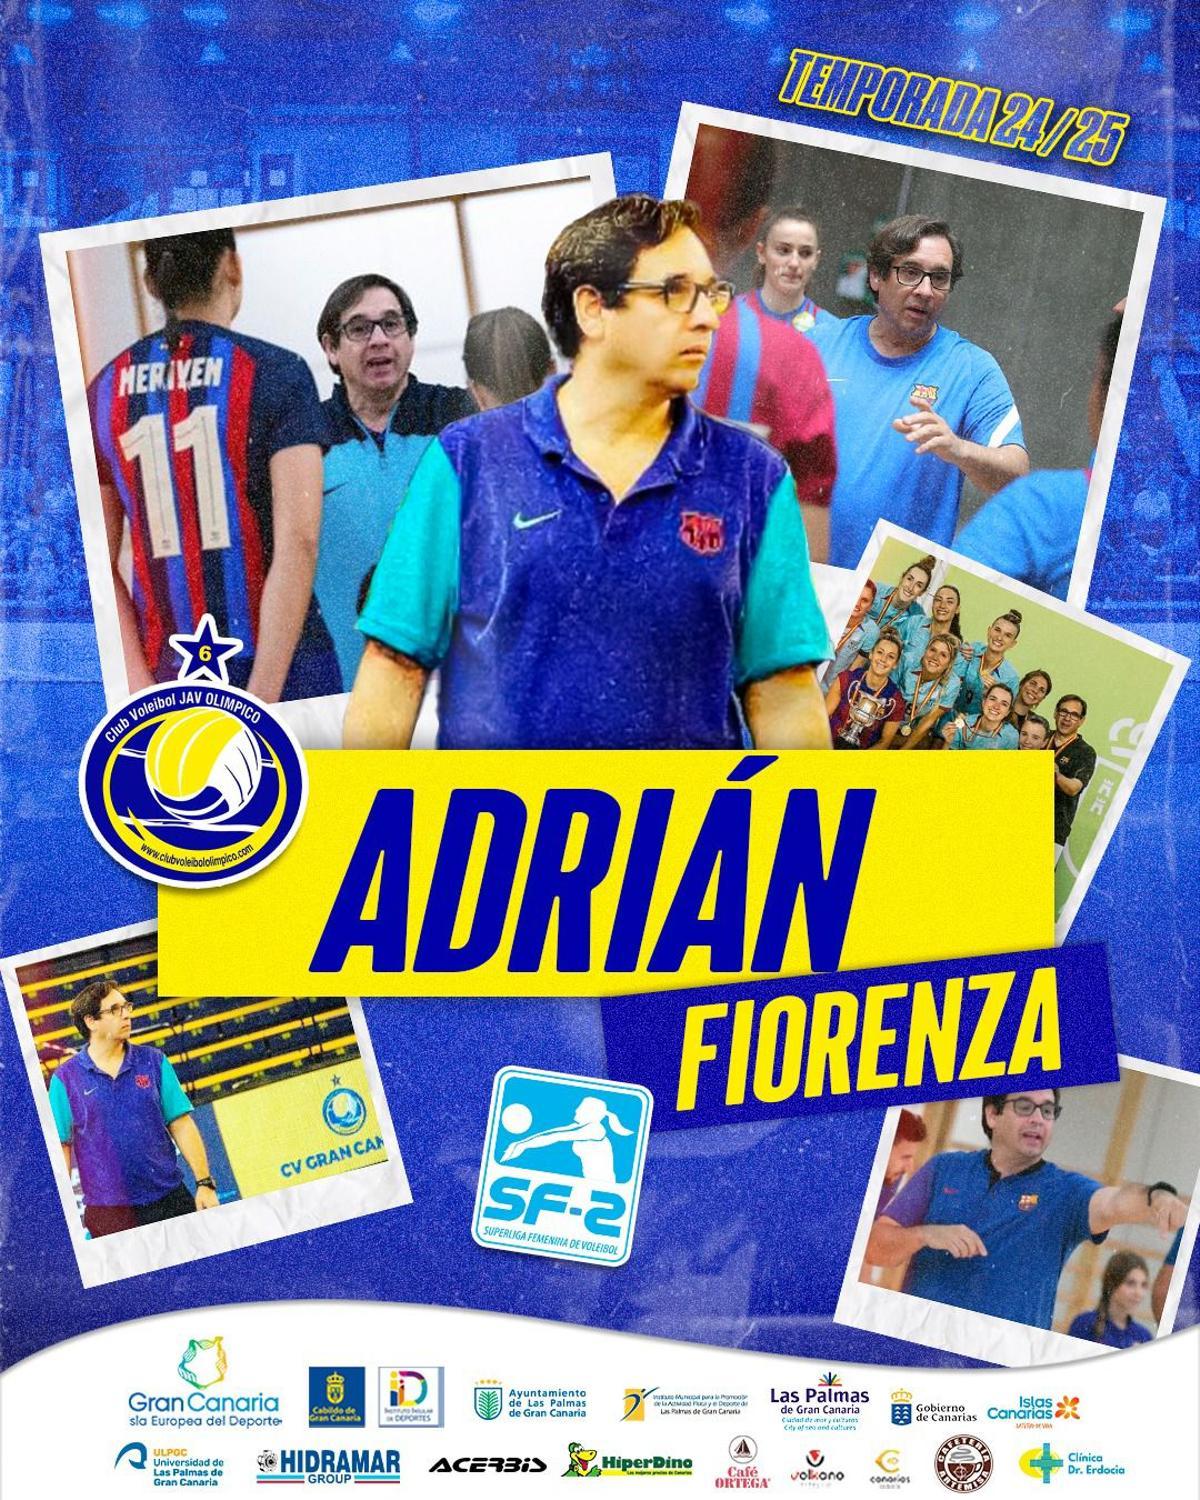 Adrián Fiorenza, asume  el mando del filial del CV Hidramar Gran Canaria